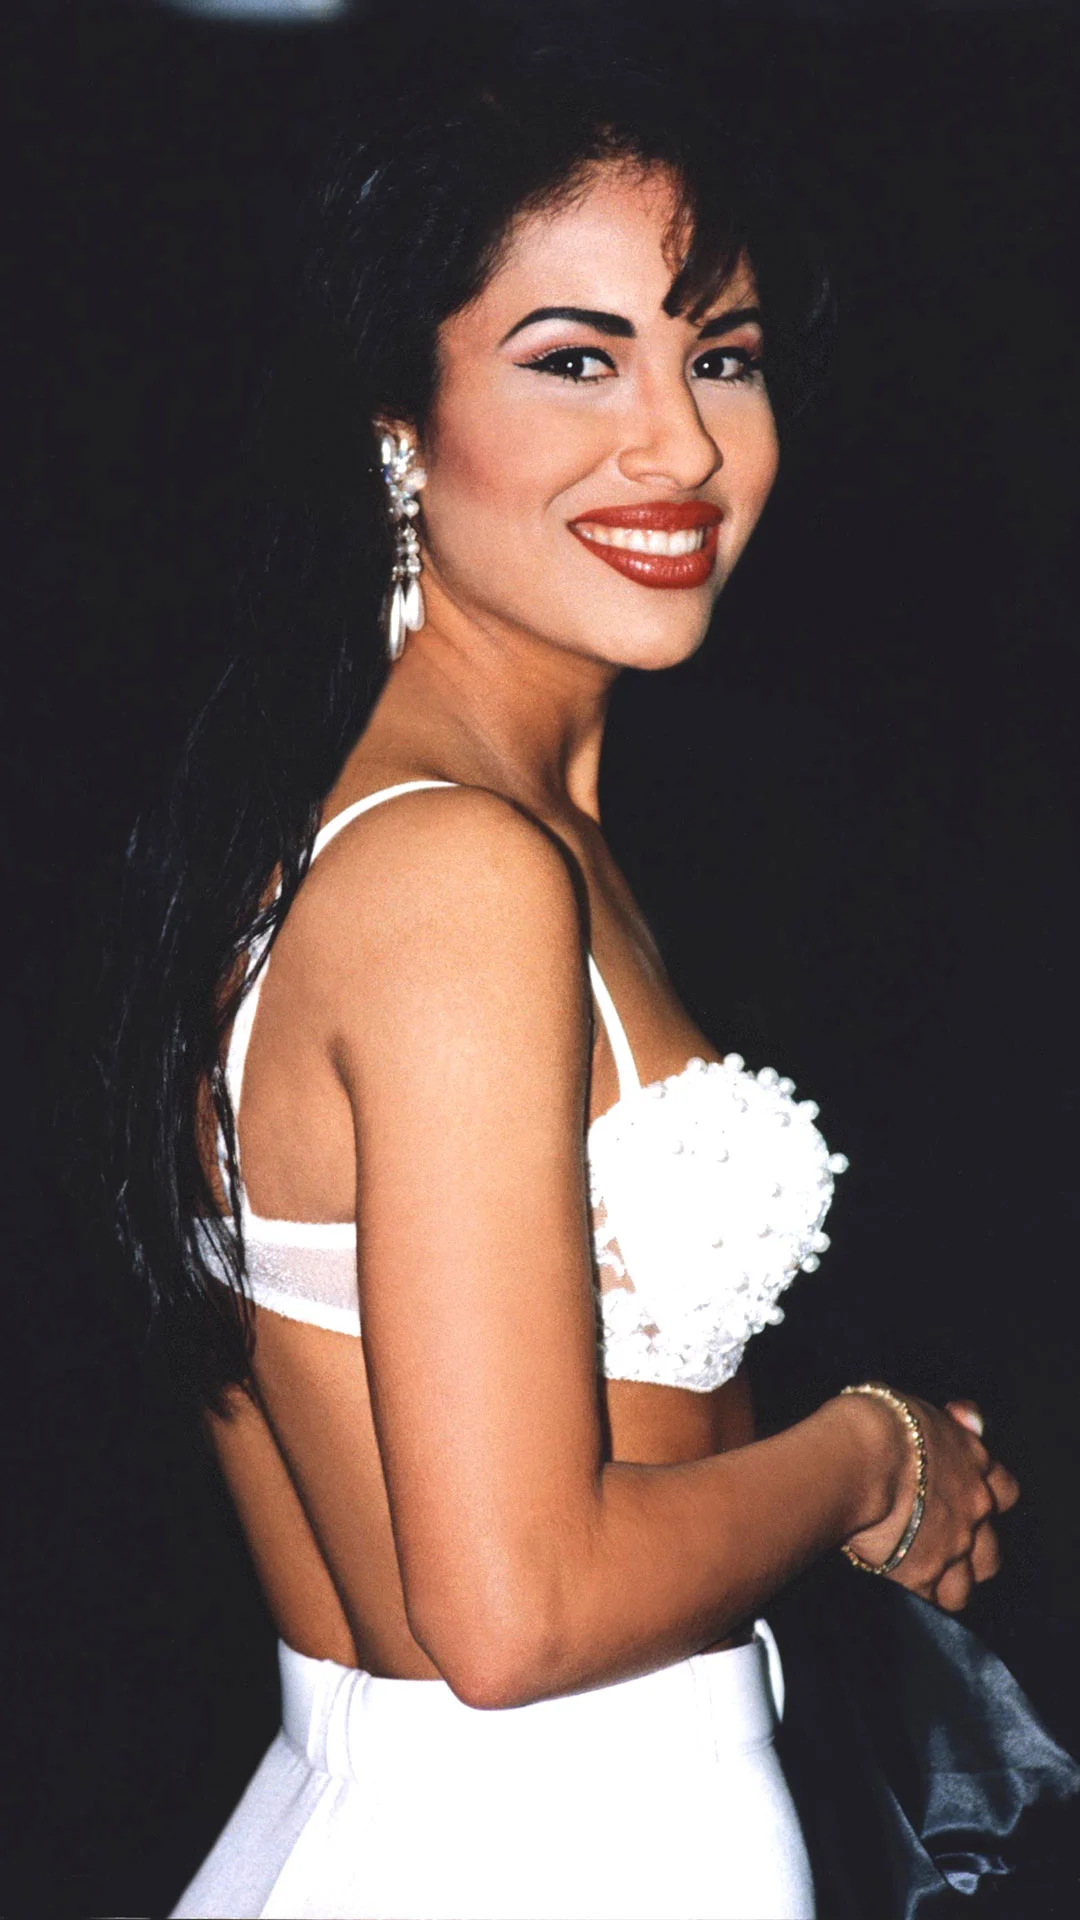 Selena en vestido blanco